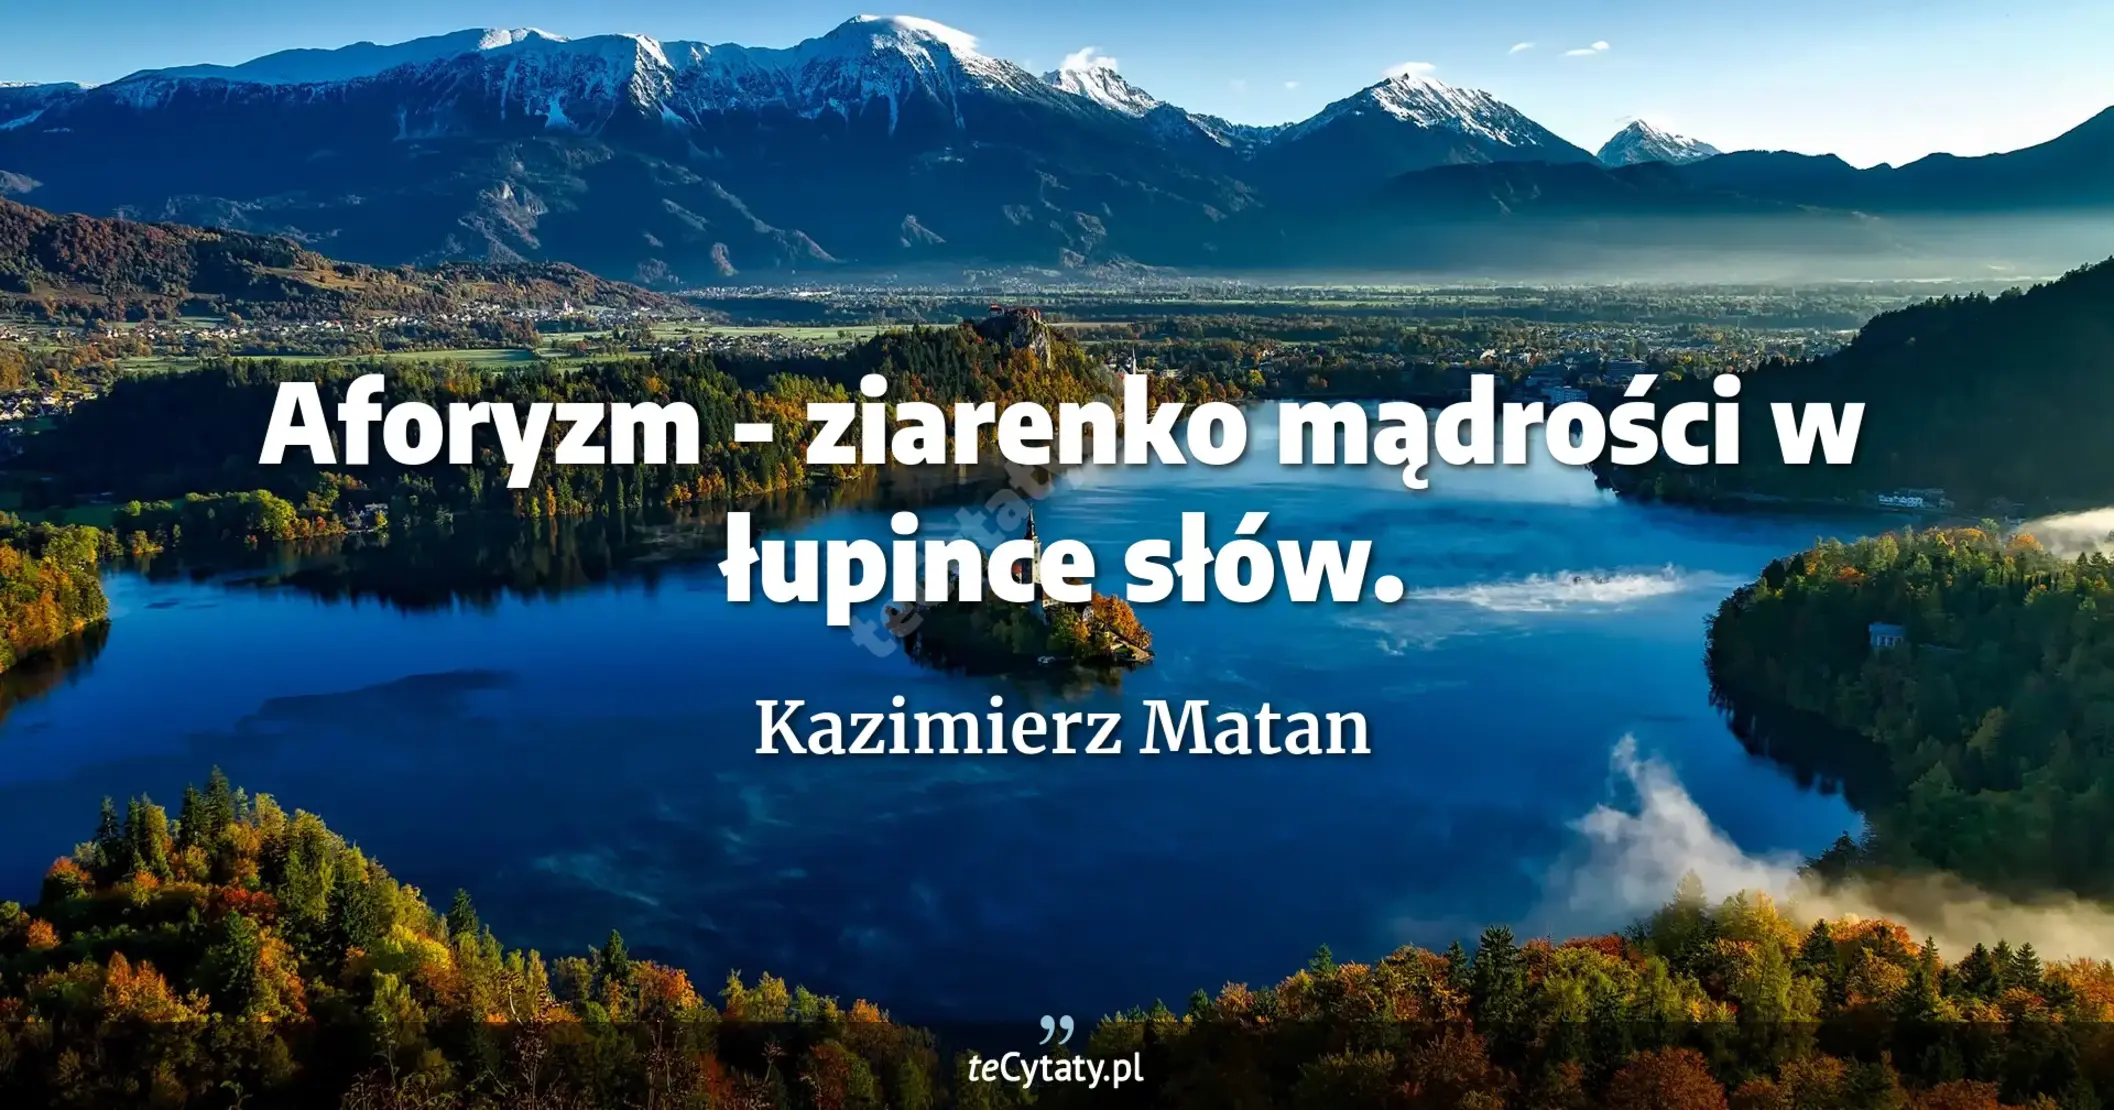 Aforyzm - ziarenko mądrości w łupince słów. - Kazimierz Matan